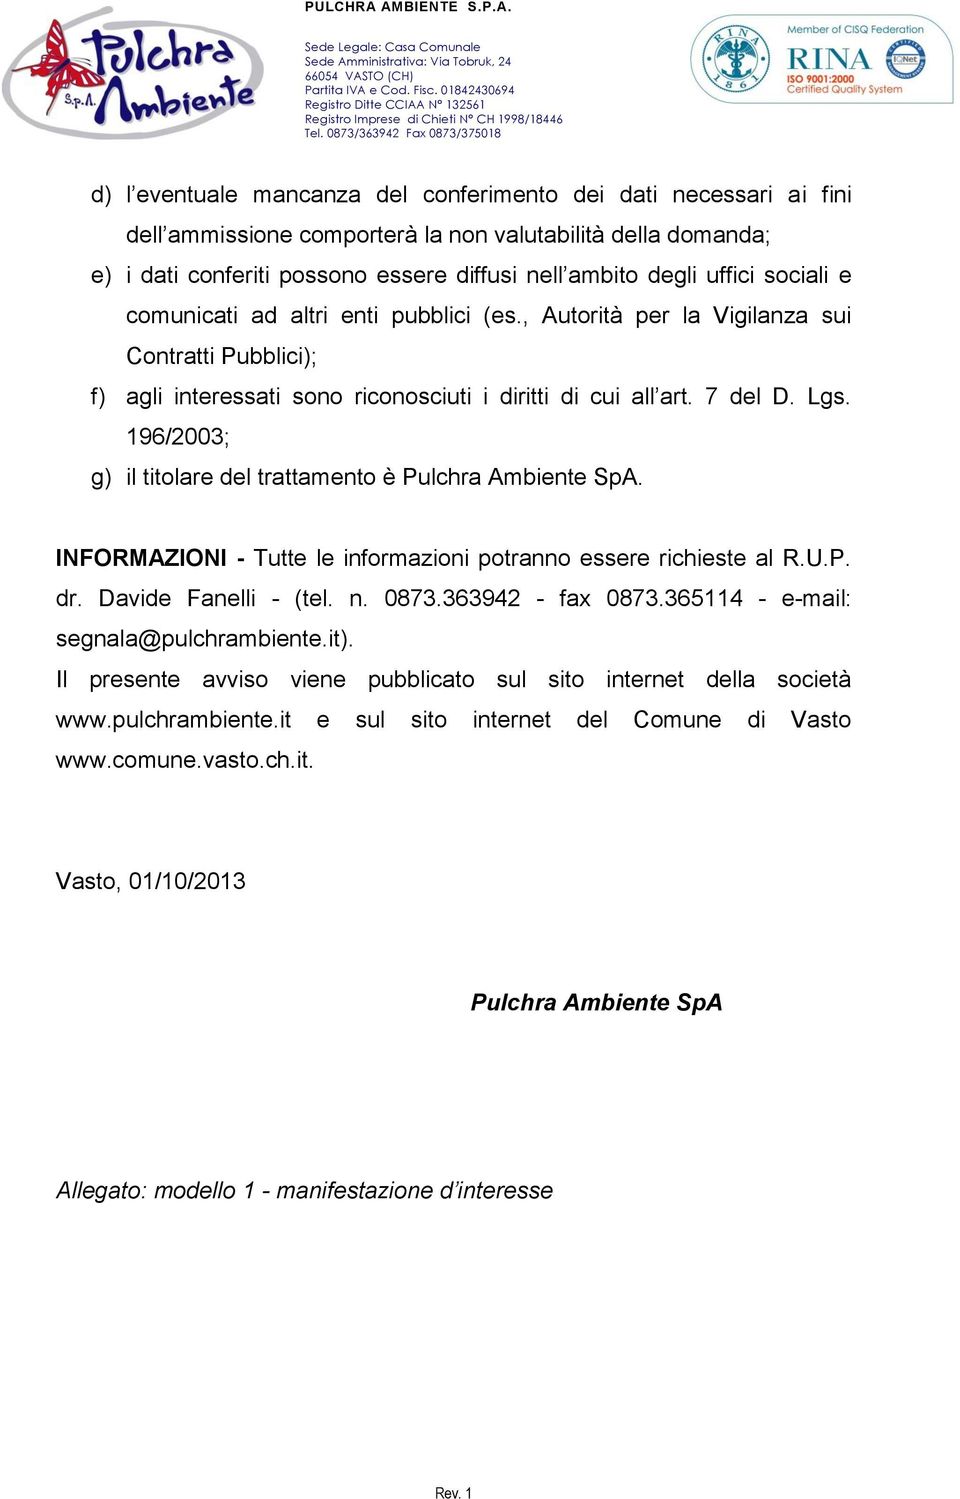 196/2003; g) il titolare del trattamento è Pulchra Ambiente SpA. INFORMAZIONI - Tutte le informazioni potranno essere richieste al R.U.P. dr. Davide Fanelli - (tel. n. 0873.363942 - fax 0873.